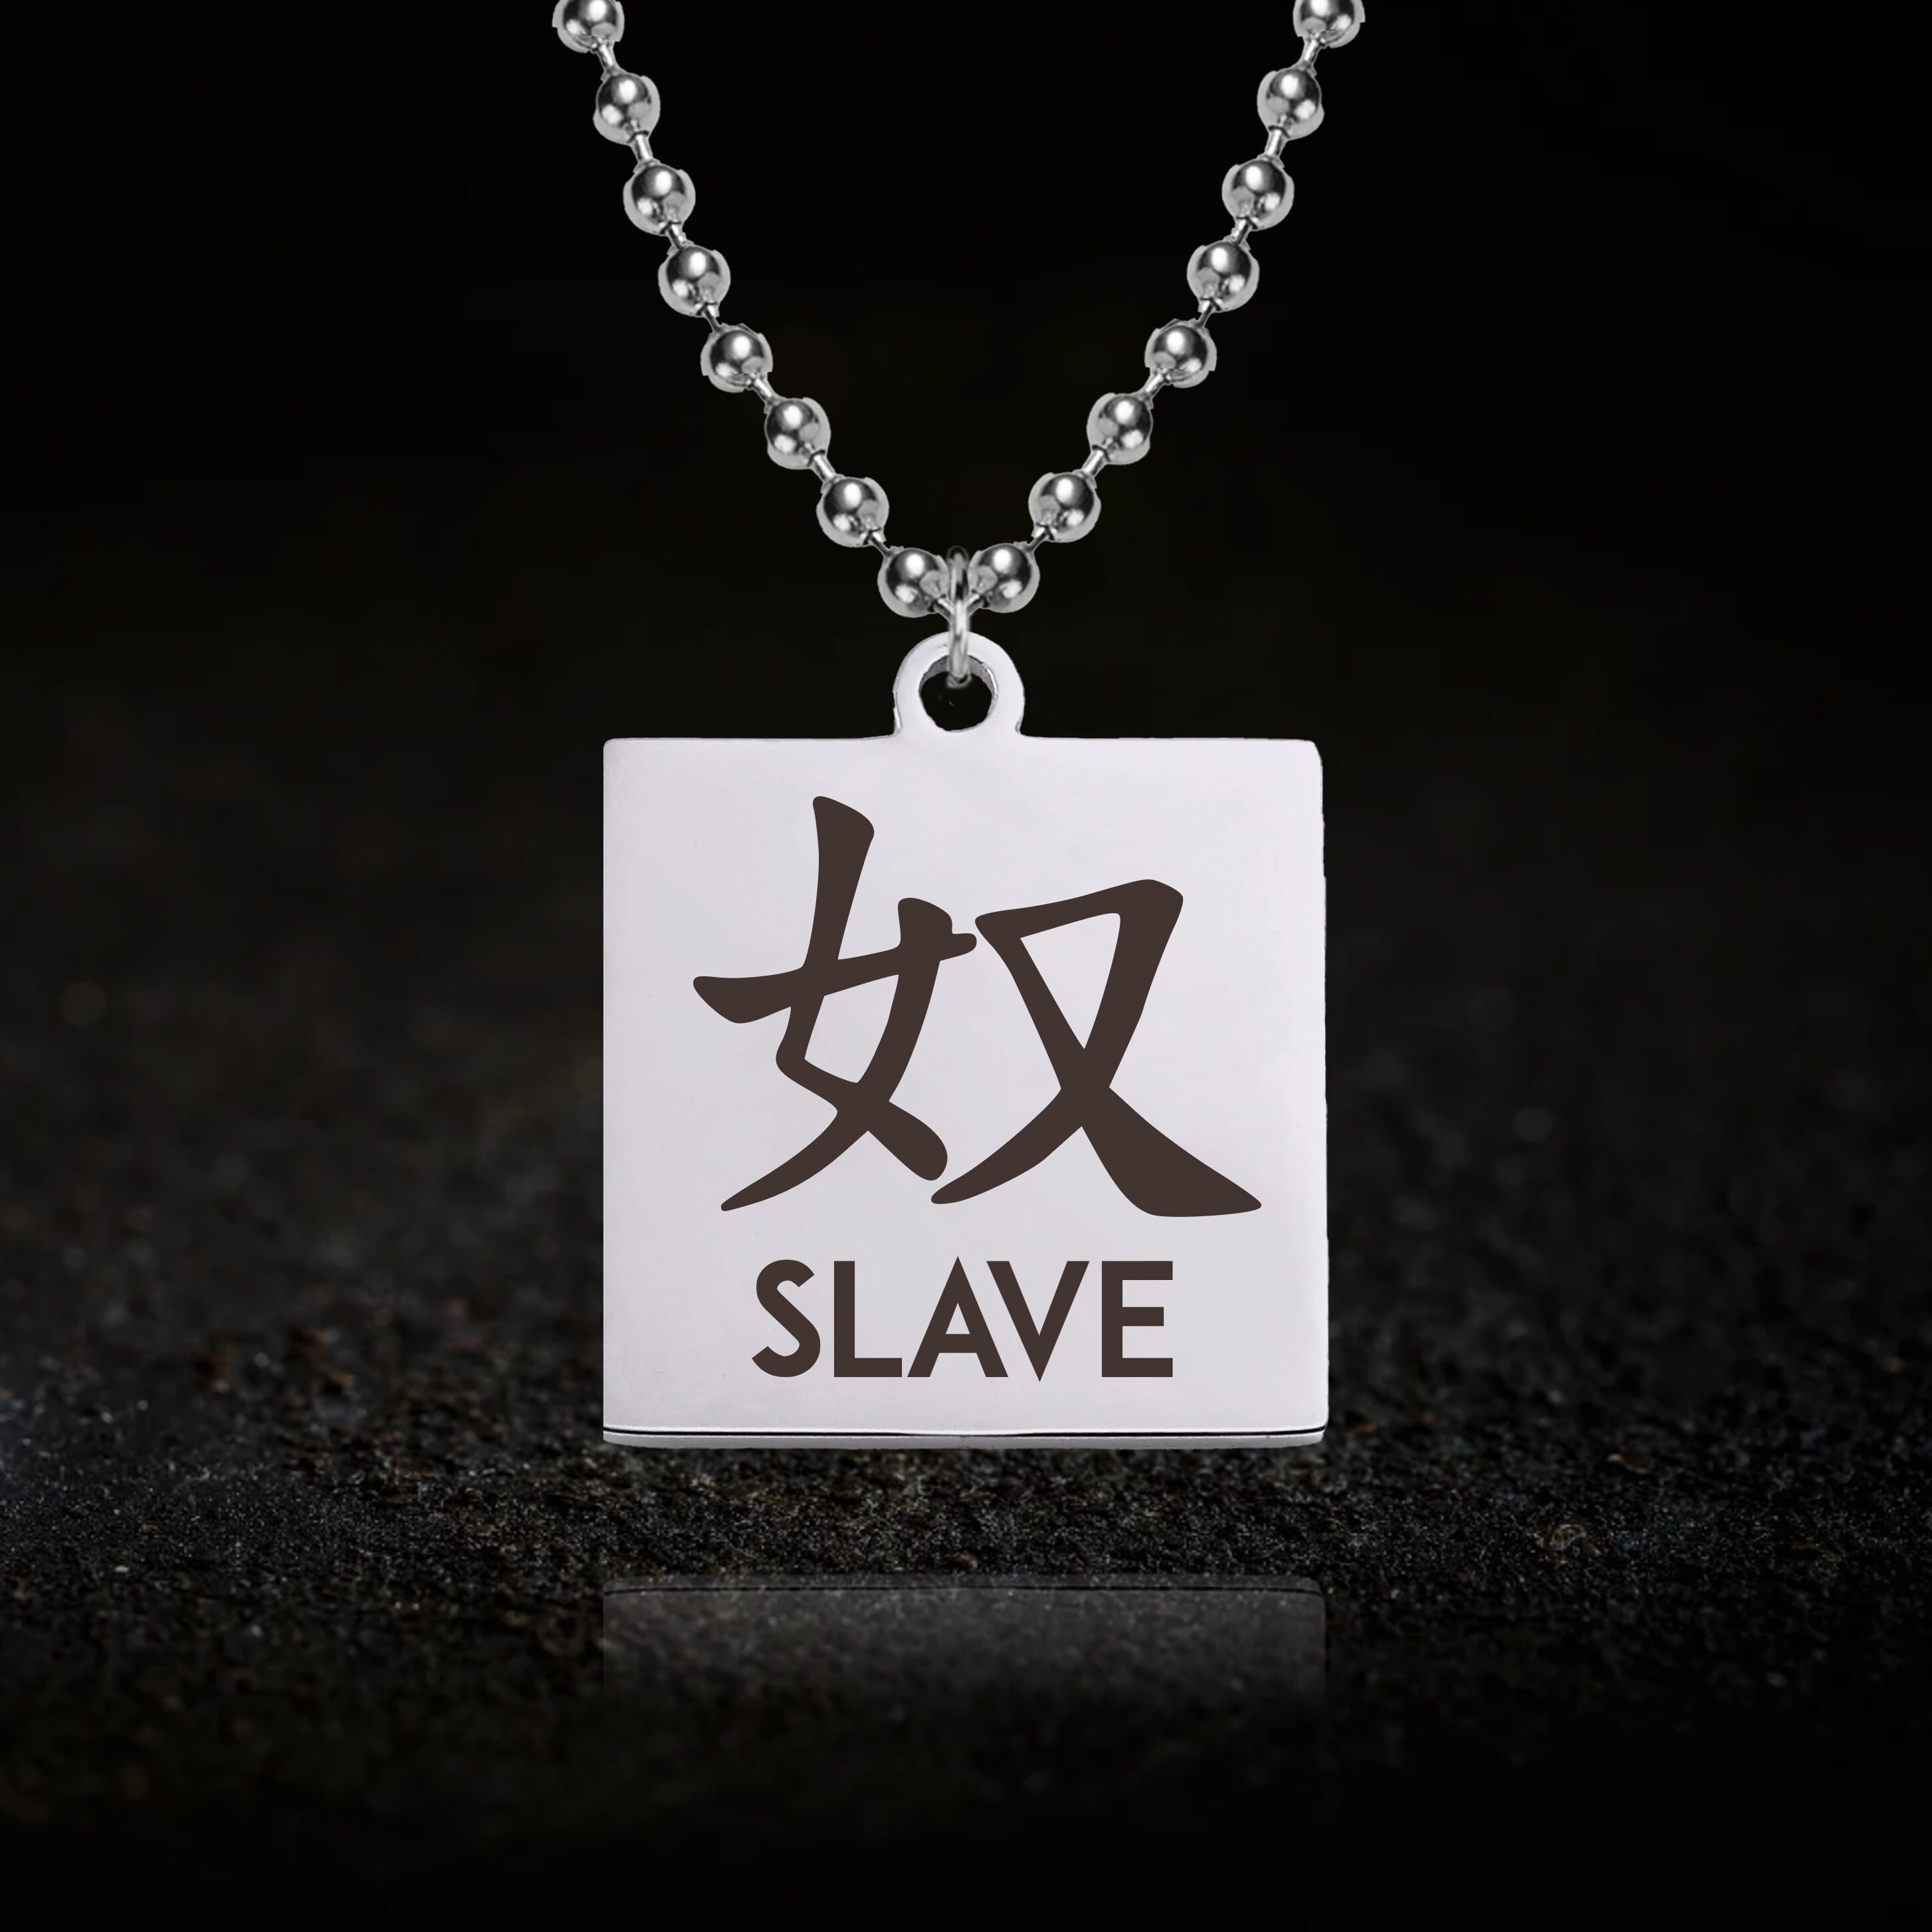 櫻遊志 slave of fashion chain necklaceネックレス